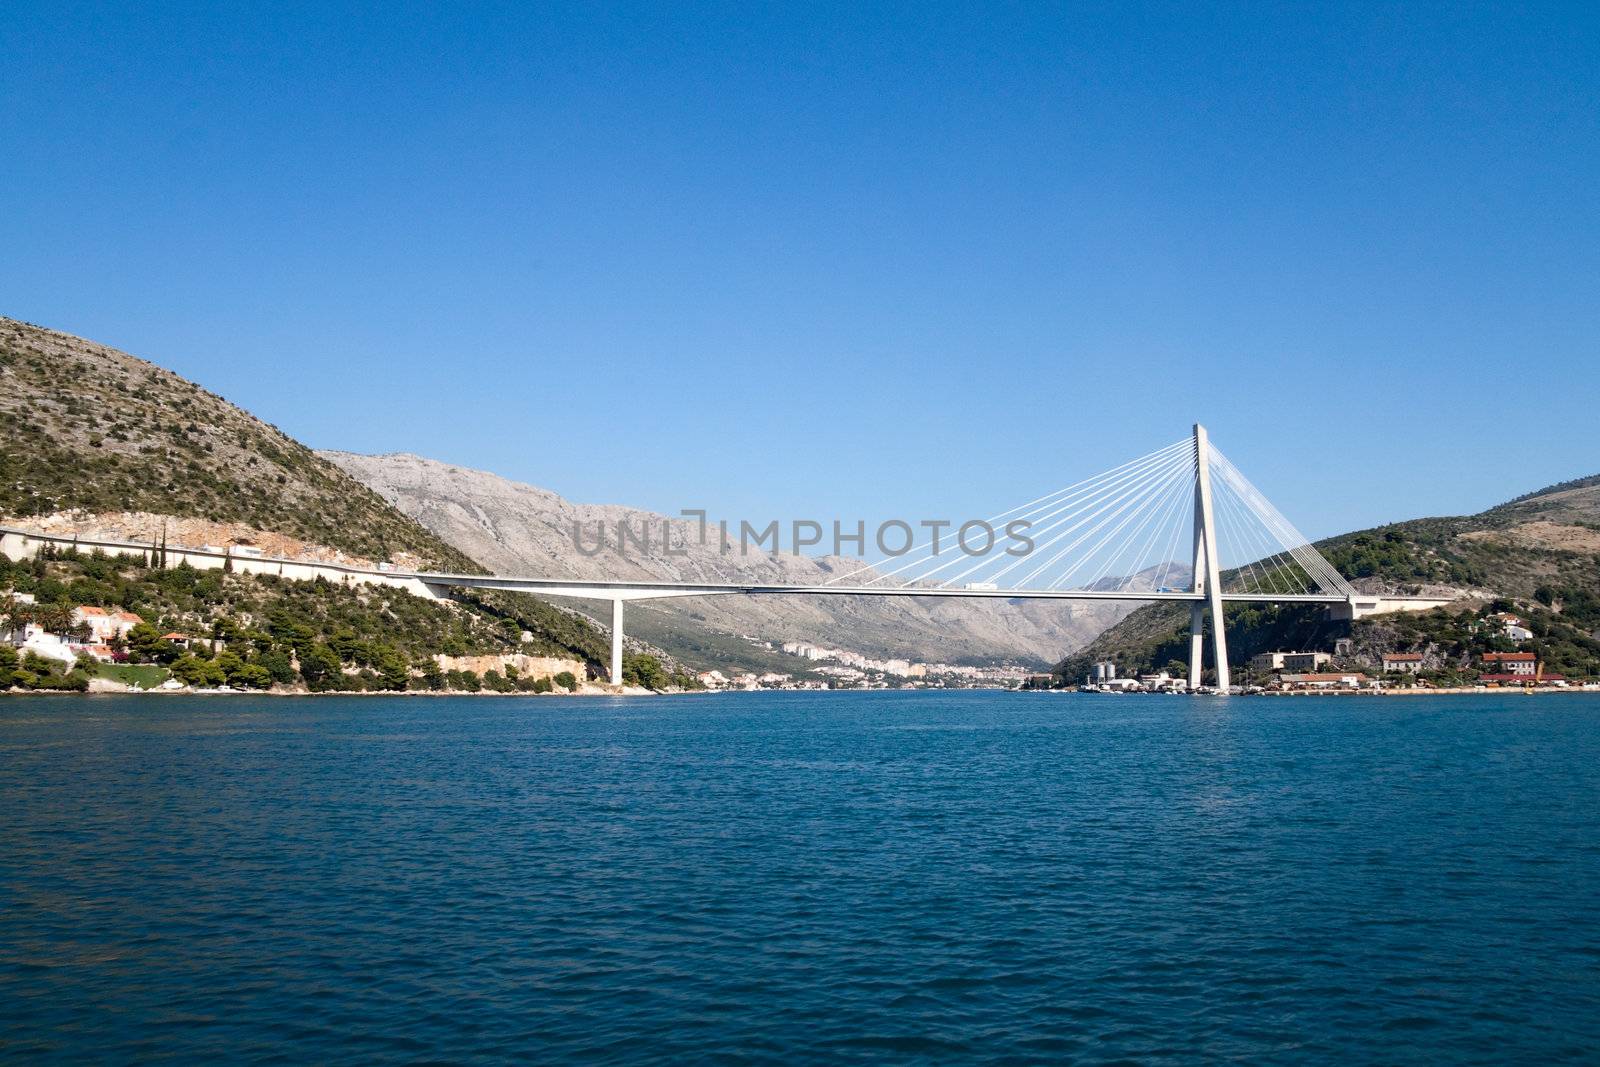 The Franjo Tudjman Bridge in Dubrovnik, Croatia